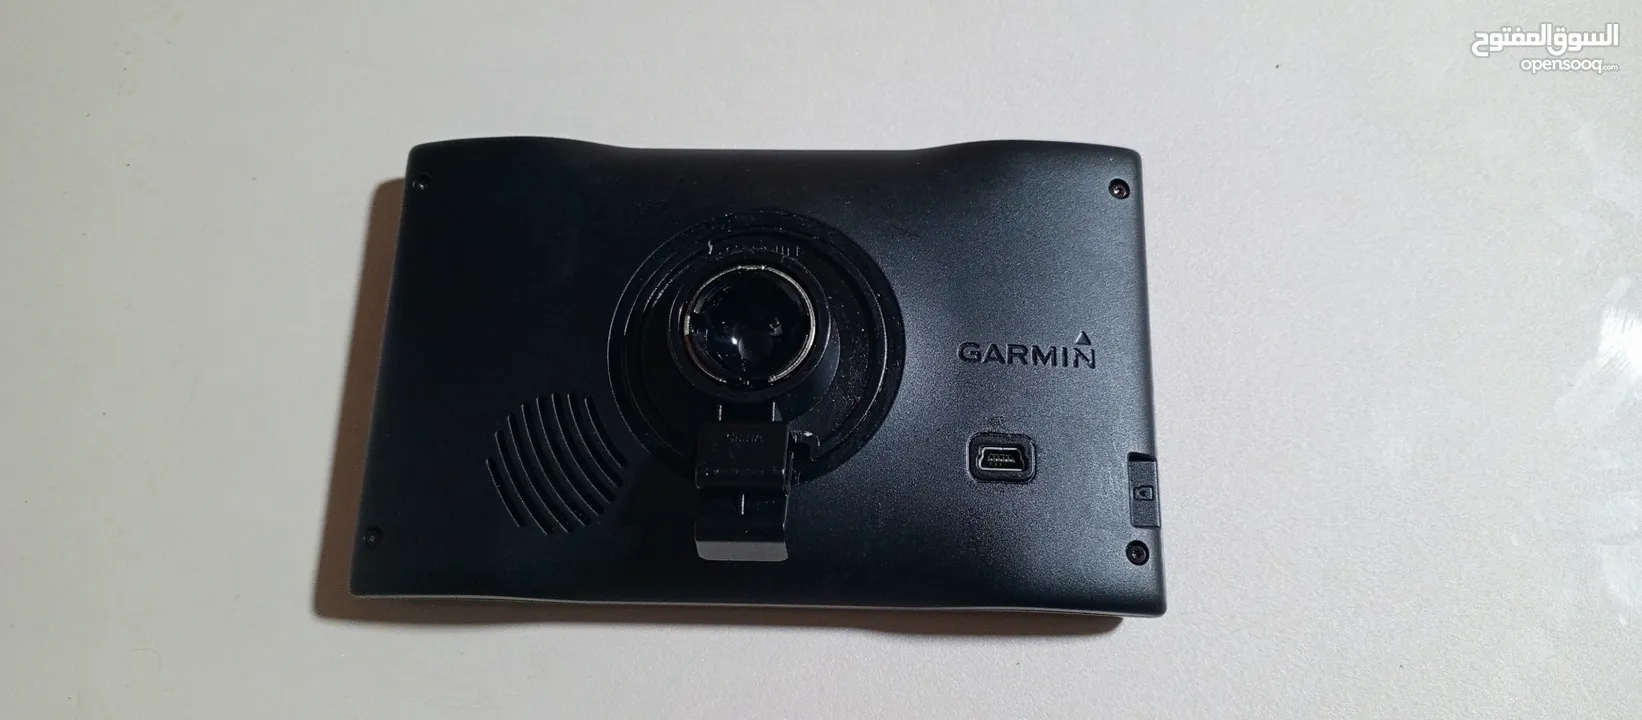 جهاز GBS GARMIN للبيع بسعر مغري